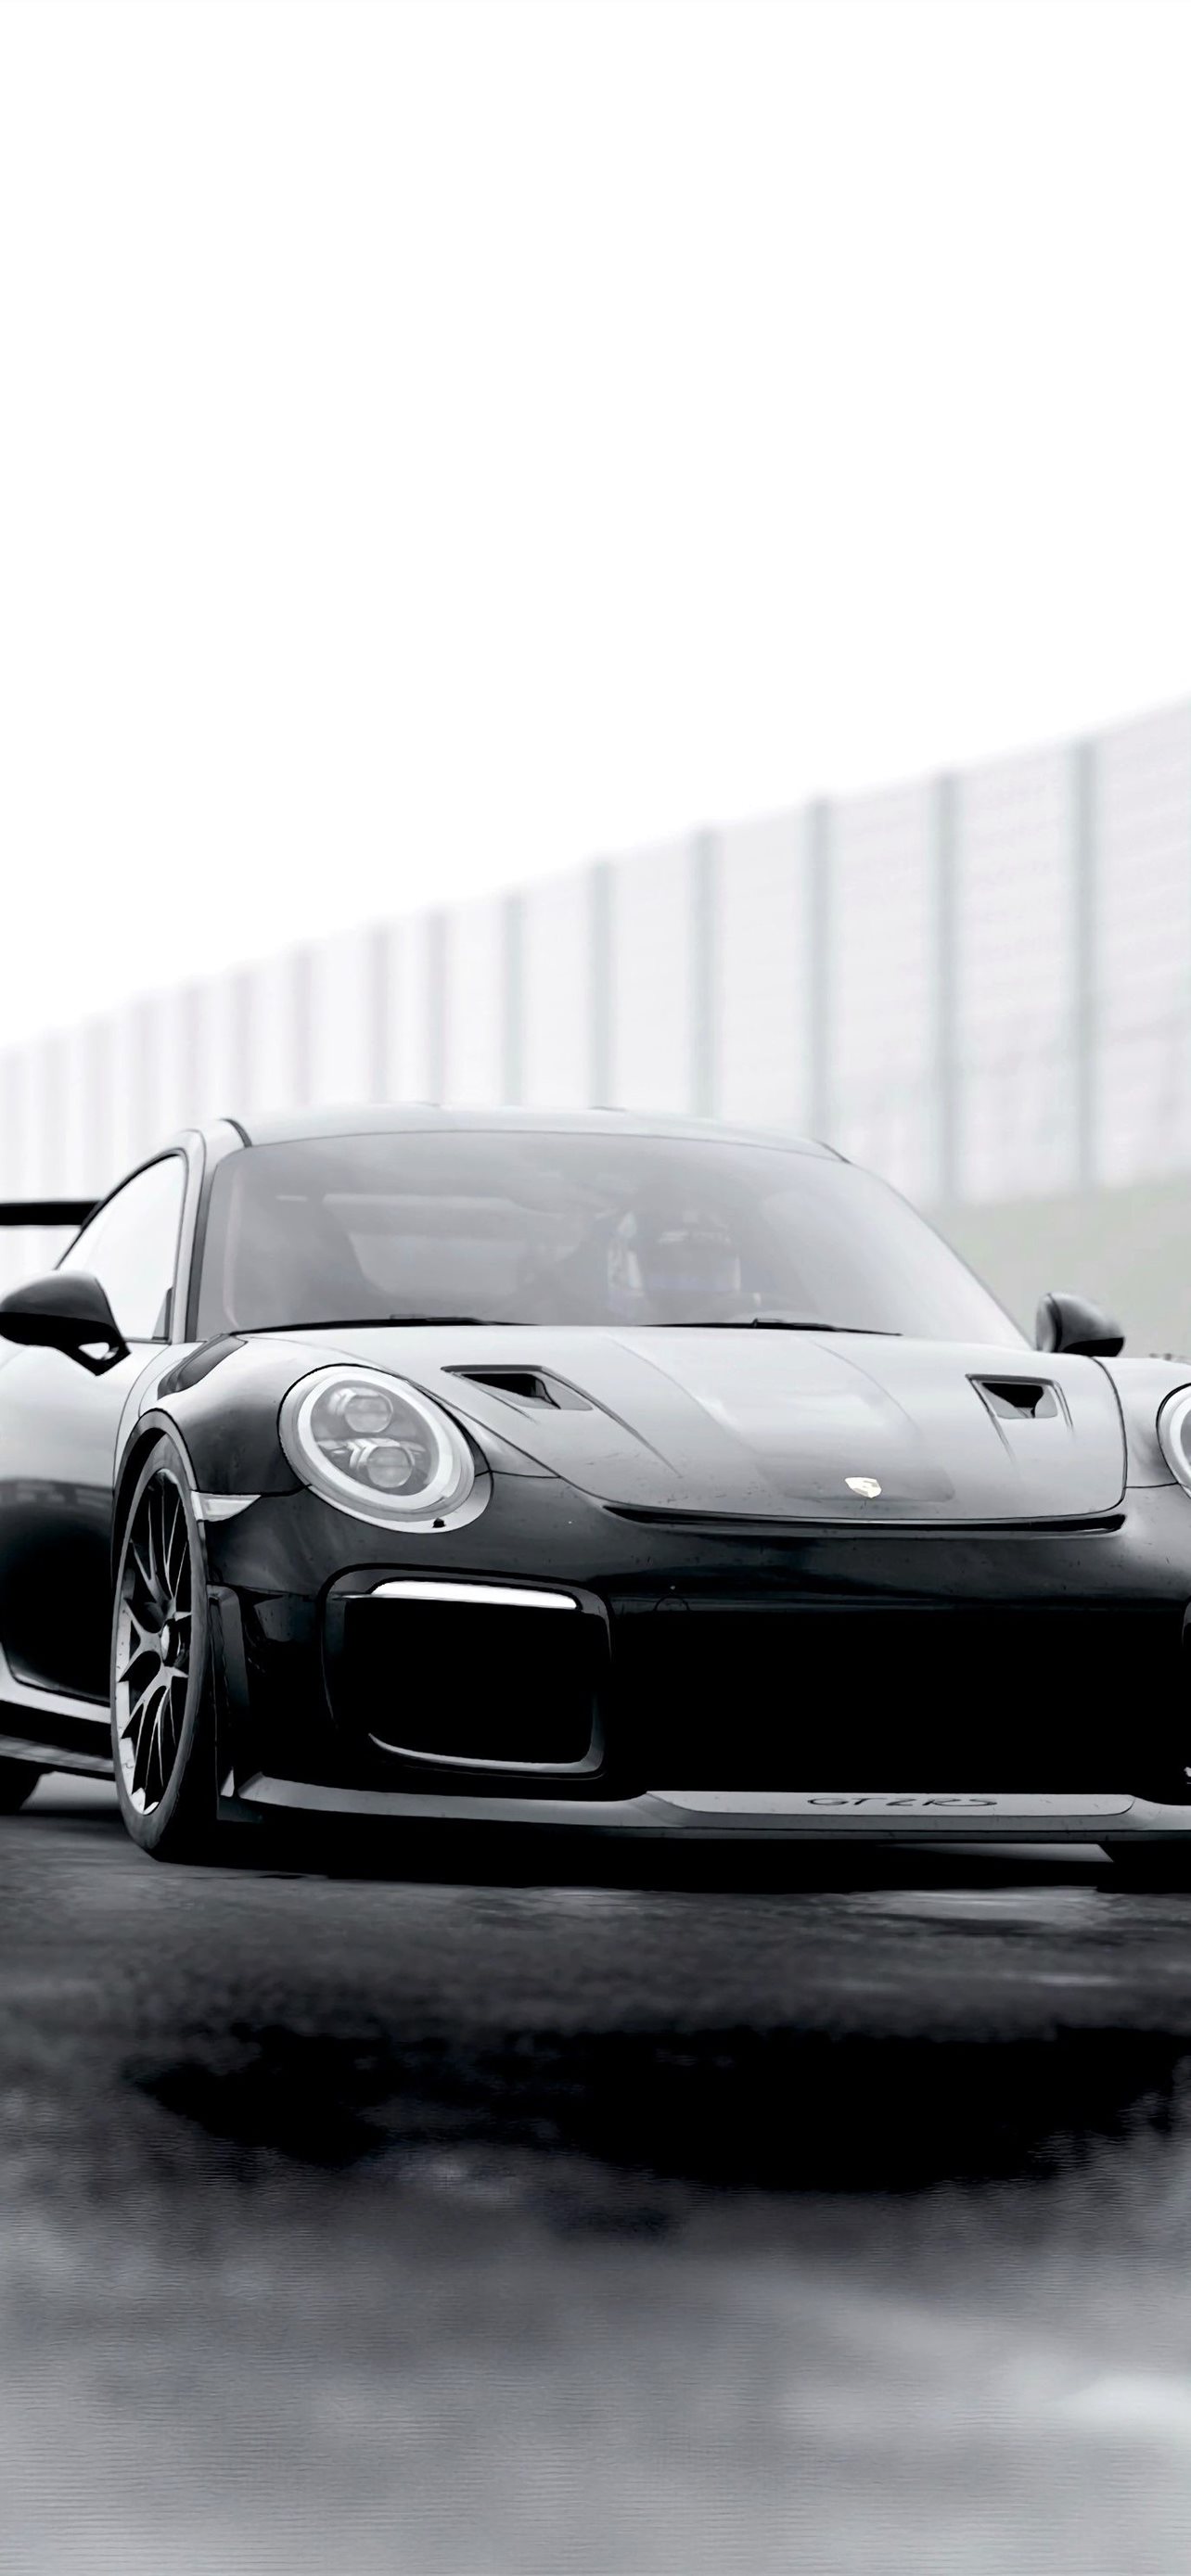 Với động cơ mạnh mẽ và kiểu dáng đầy năng động, chiếc xe Porsche 911 cabriolet không chỉ là một phương tiện đi lại mà còn là một tác phẩm nghệ thuật trong thế giới ô tô. Hãy tải hình nền Porsche 911 cabriolet và cảm nhận sự đẳng cấp của thiết kế này.